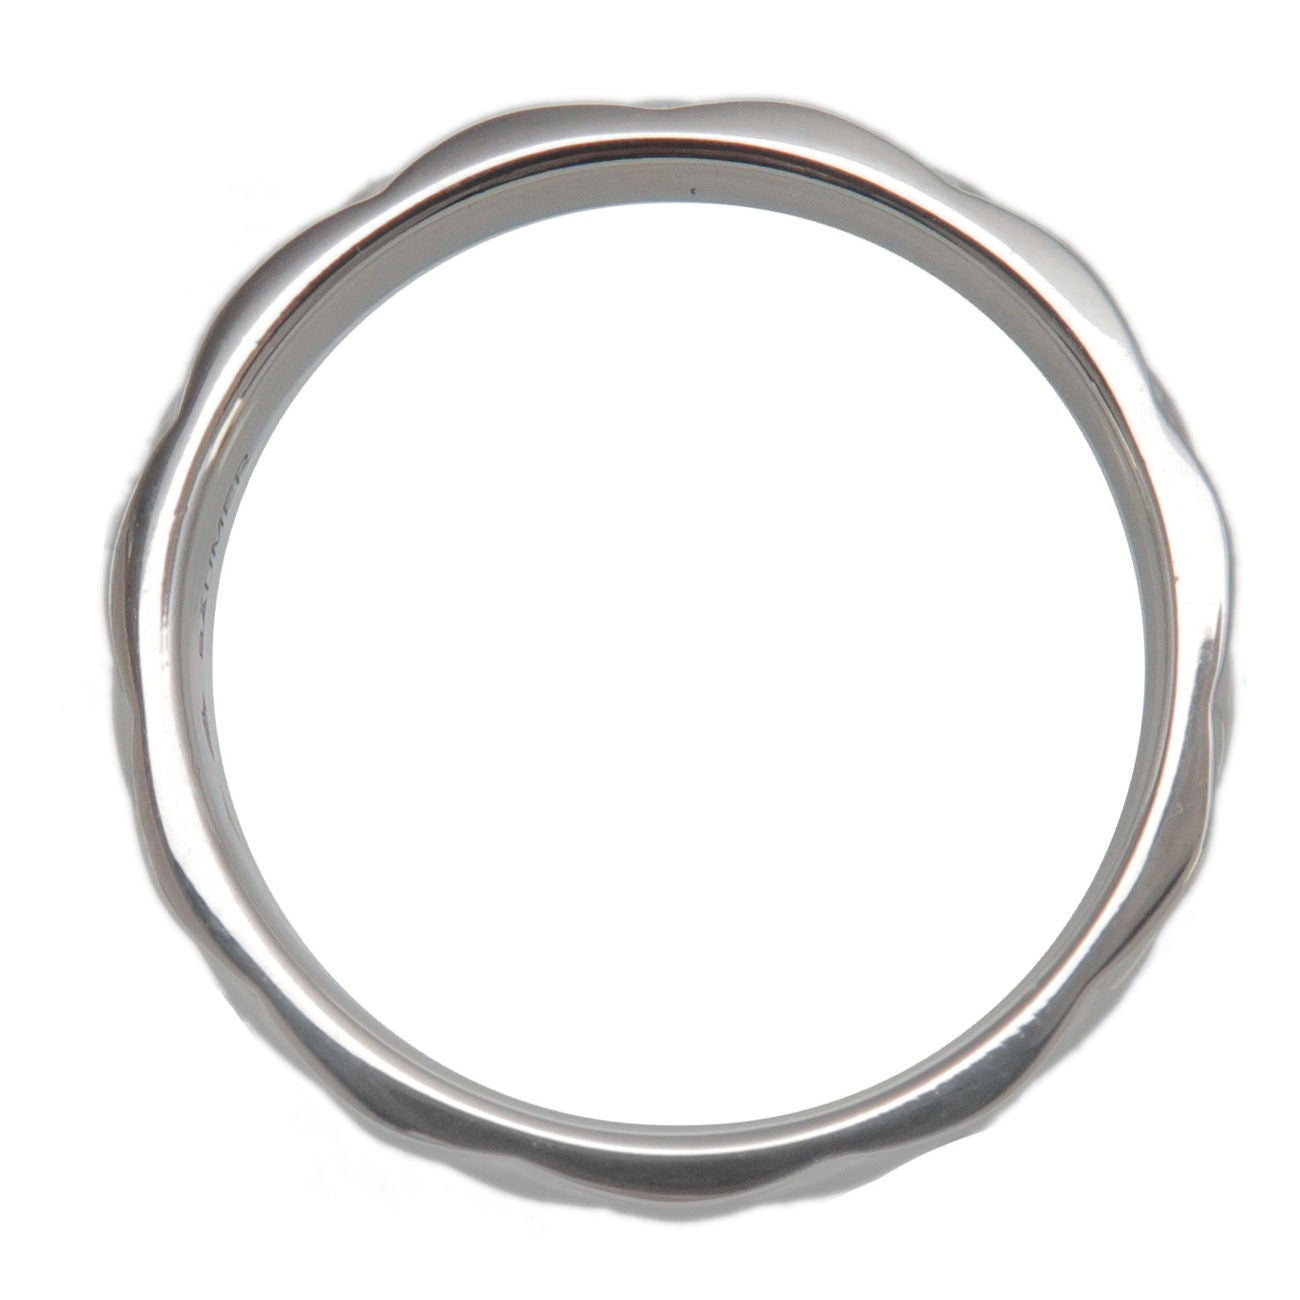 CHANEL Matelasse Ring Medium PT950 Platinum #55 US7-7.5 EU55